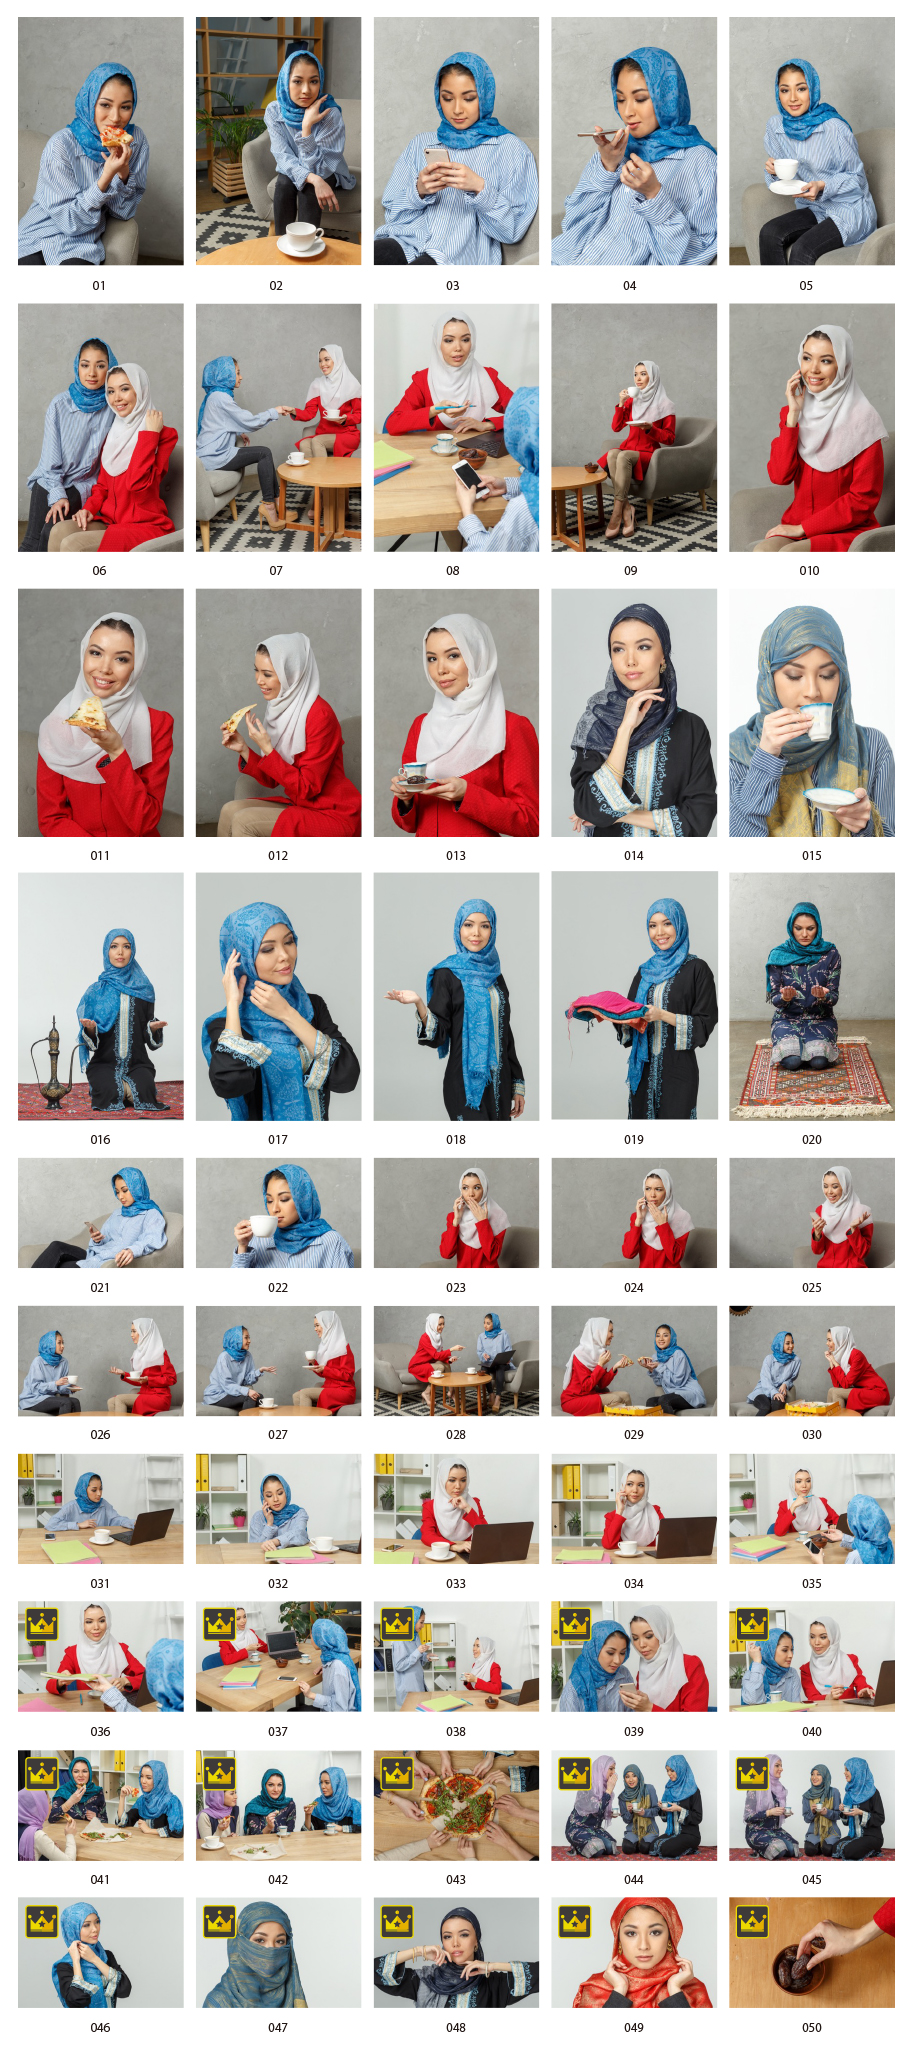 Hijab亞洲女性股票照片